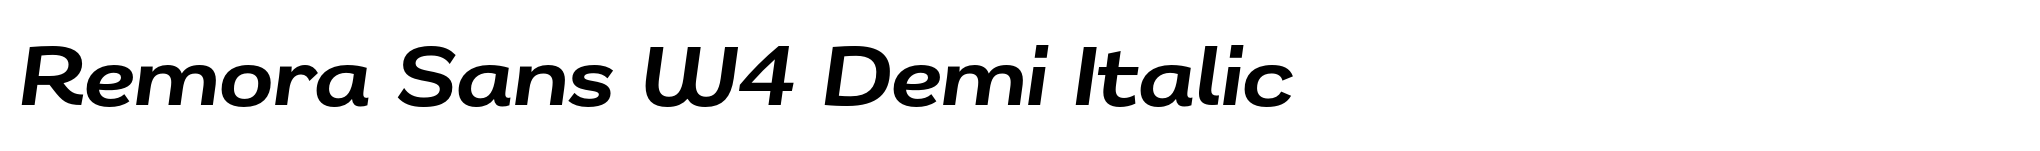 Remora Sans W4 Demi Italic image